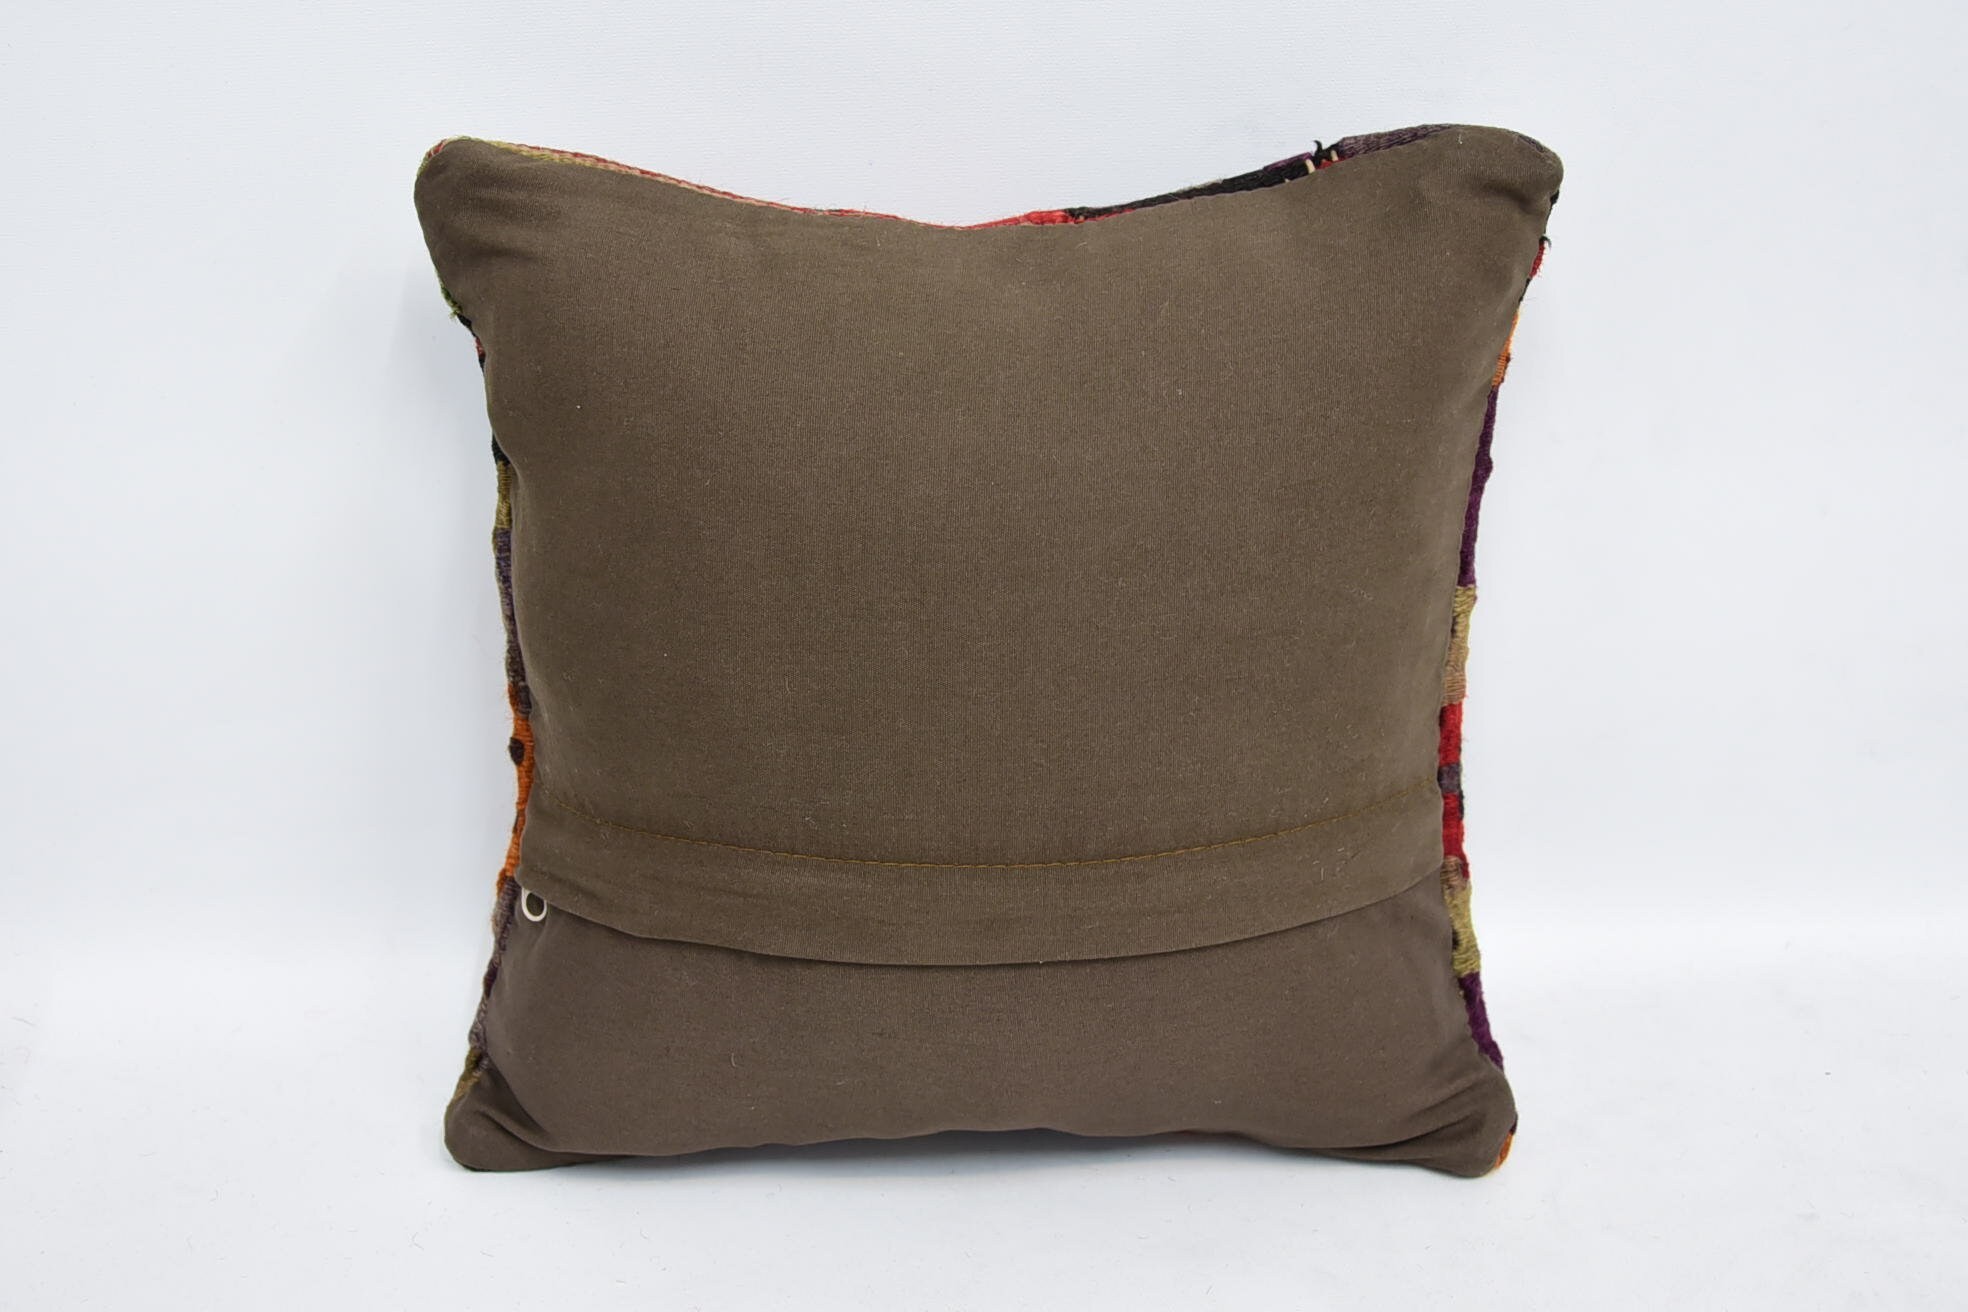 Antique Pillows, Anatolian Pillow Case, 12"x12" Brown Cushion Cover, Vintage Kilim Throw Pillow, Handmade Kilim Cushion